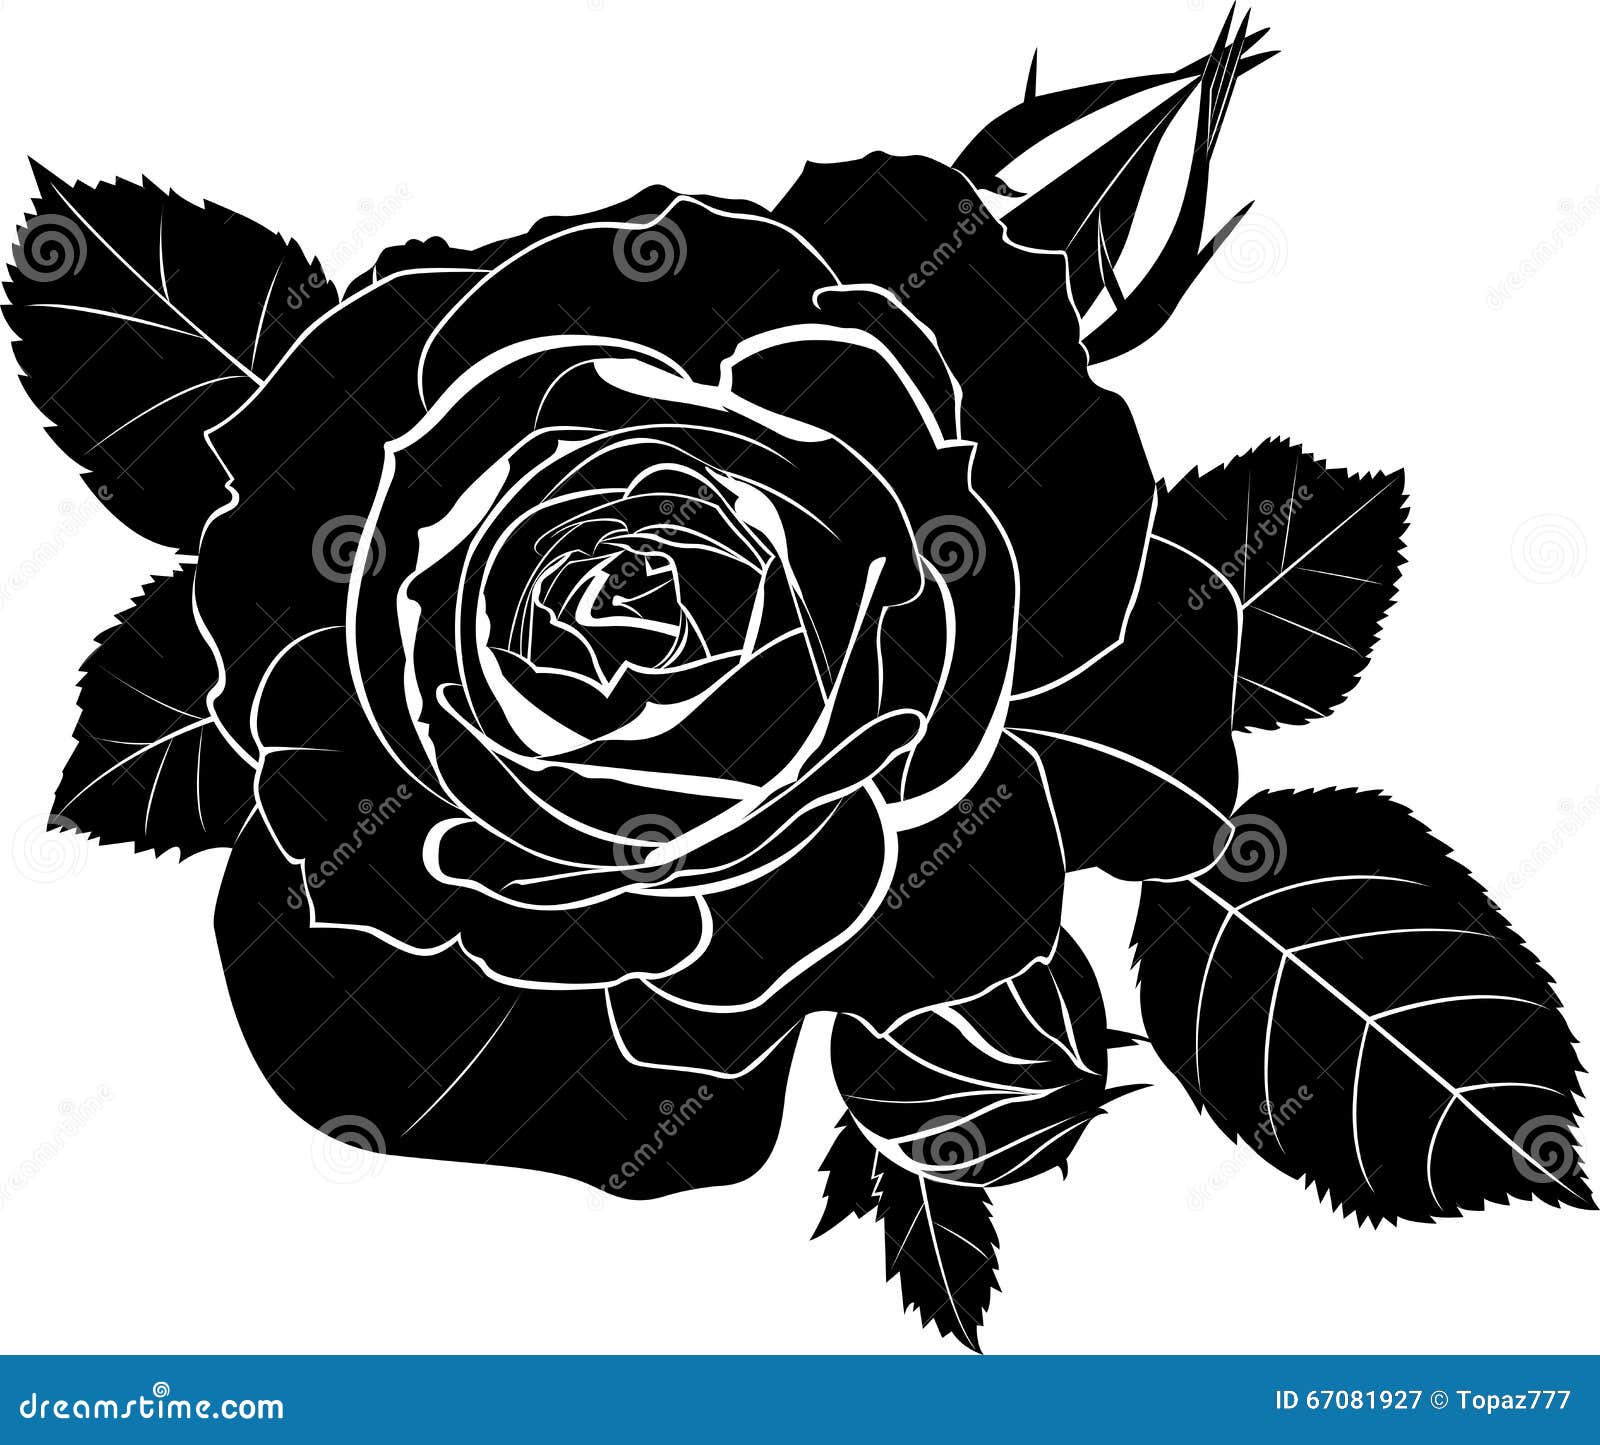 Roses stock vector. Illustration of sketch, vintage, element - 67081927